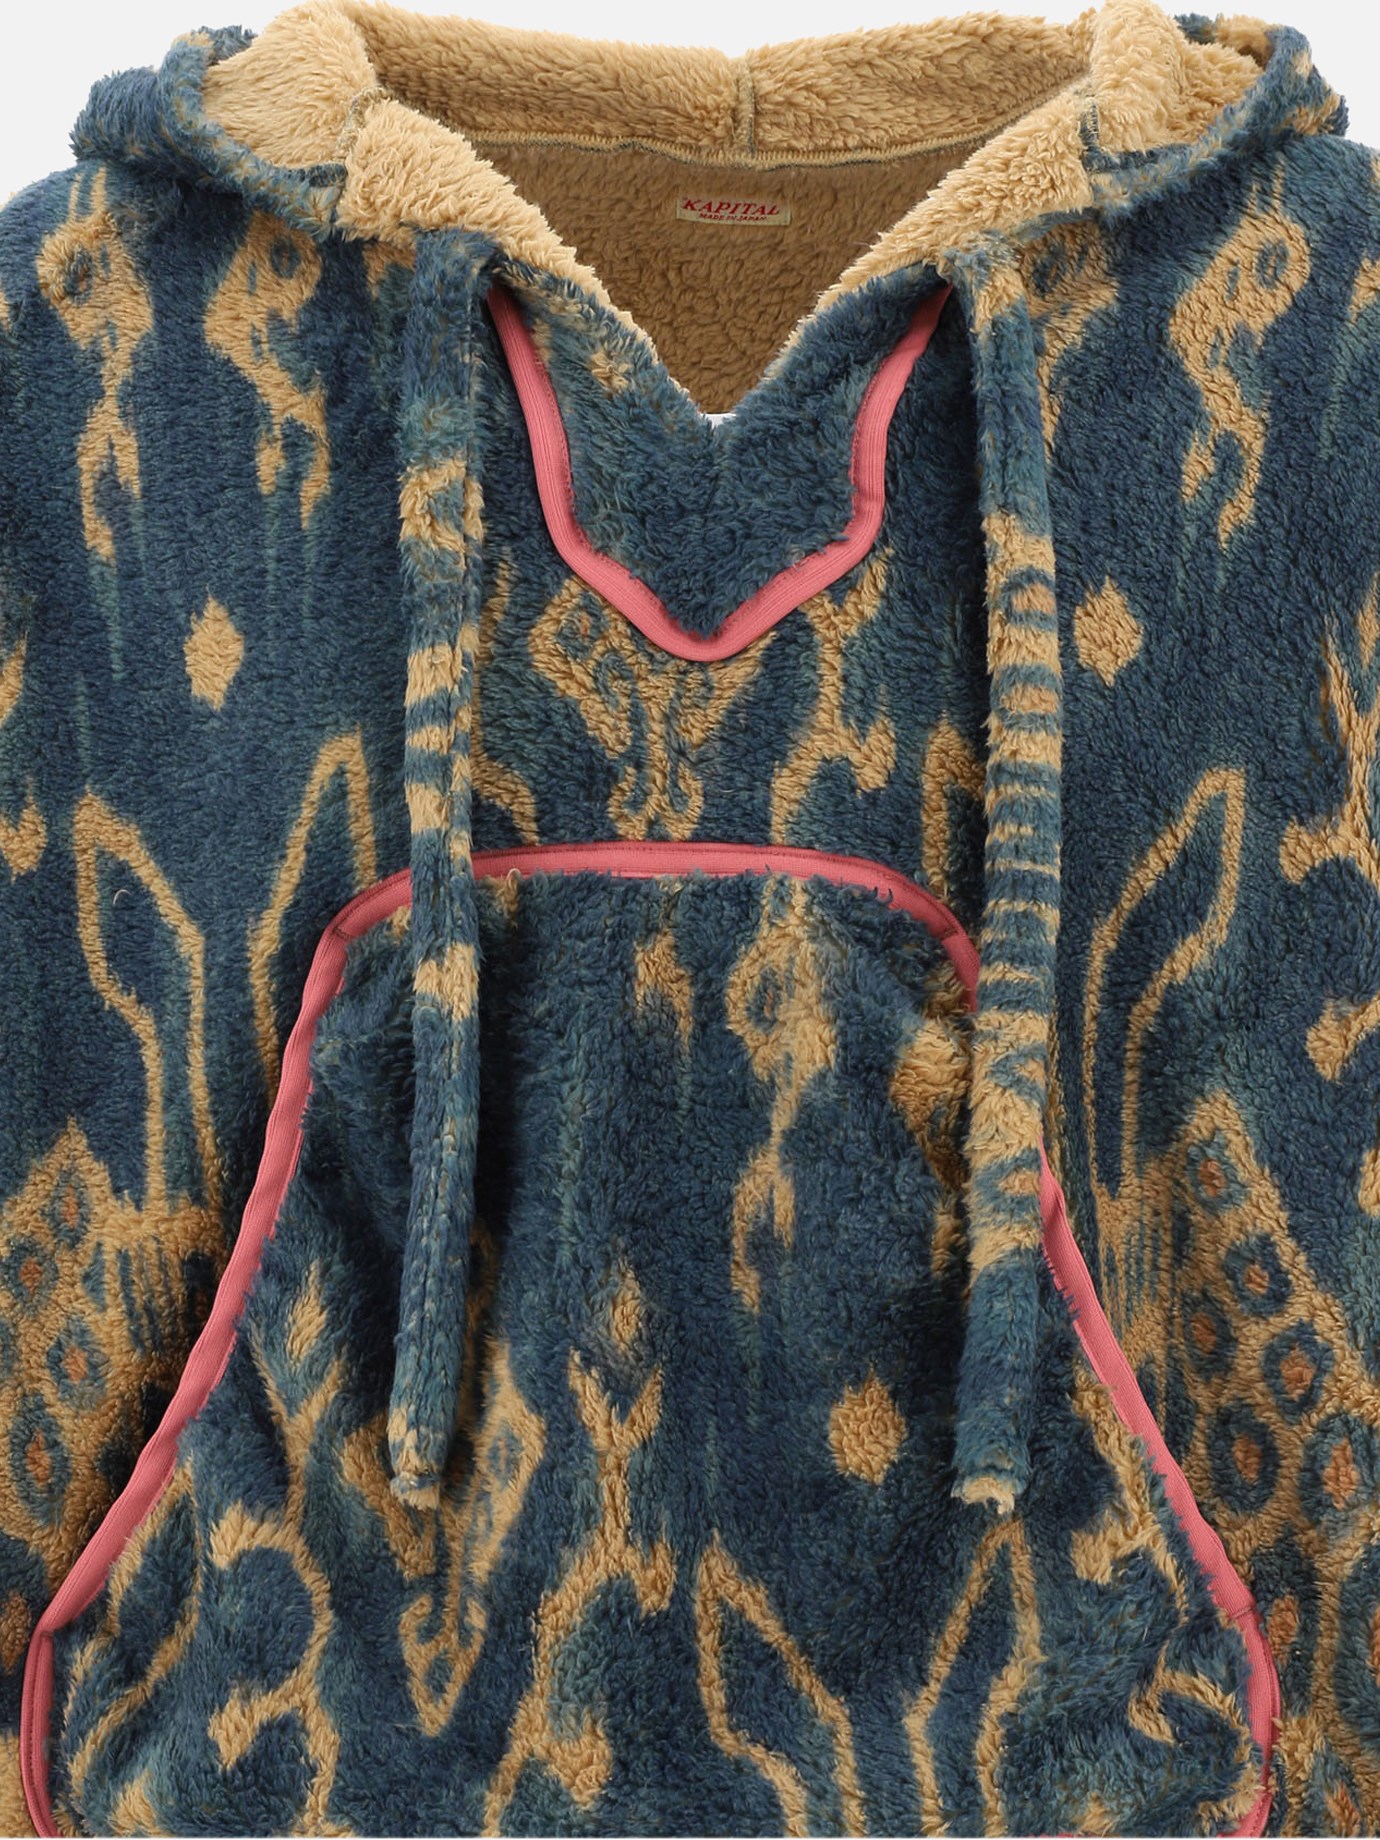  Baker  fleece hoodie by Kapital